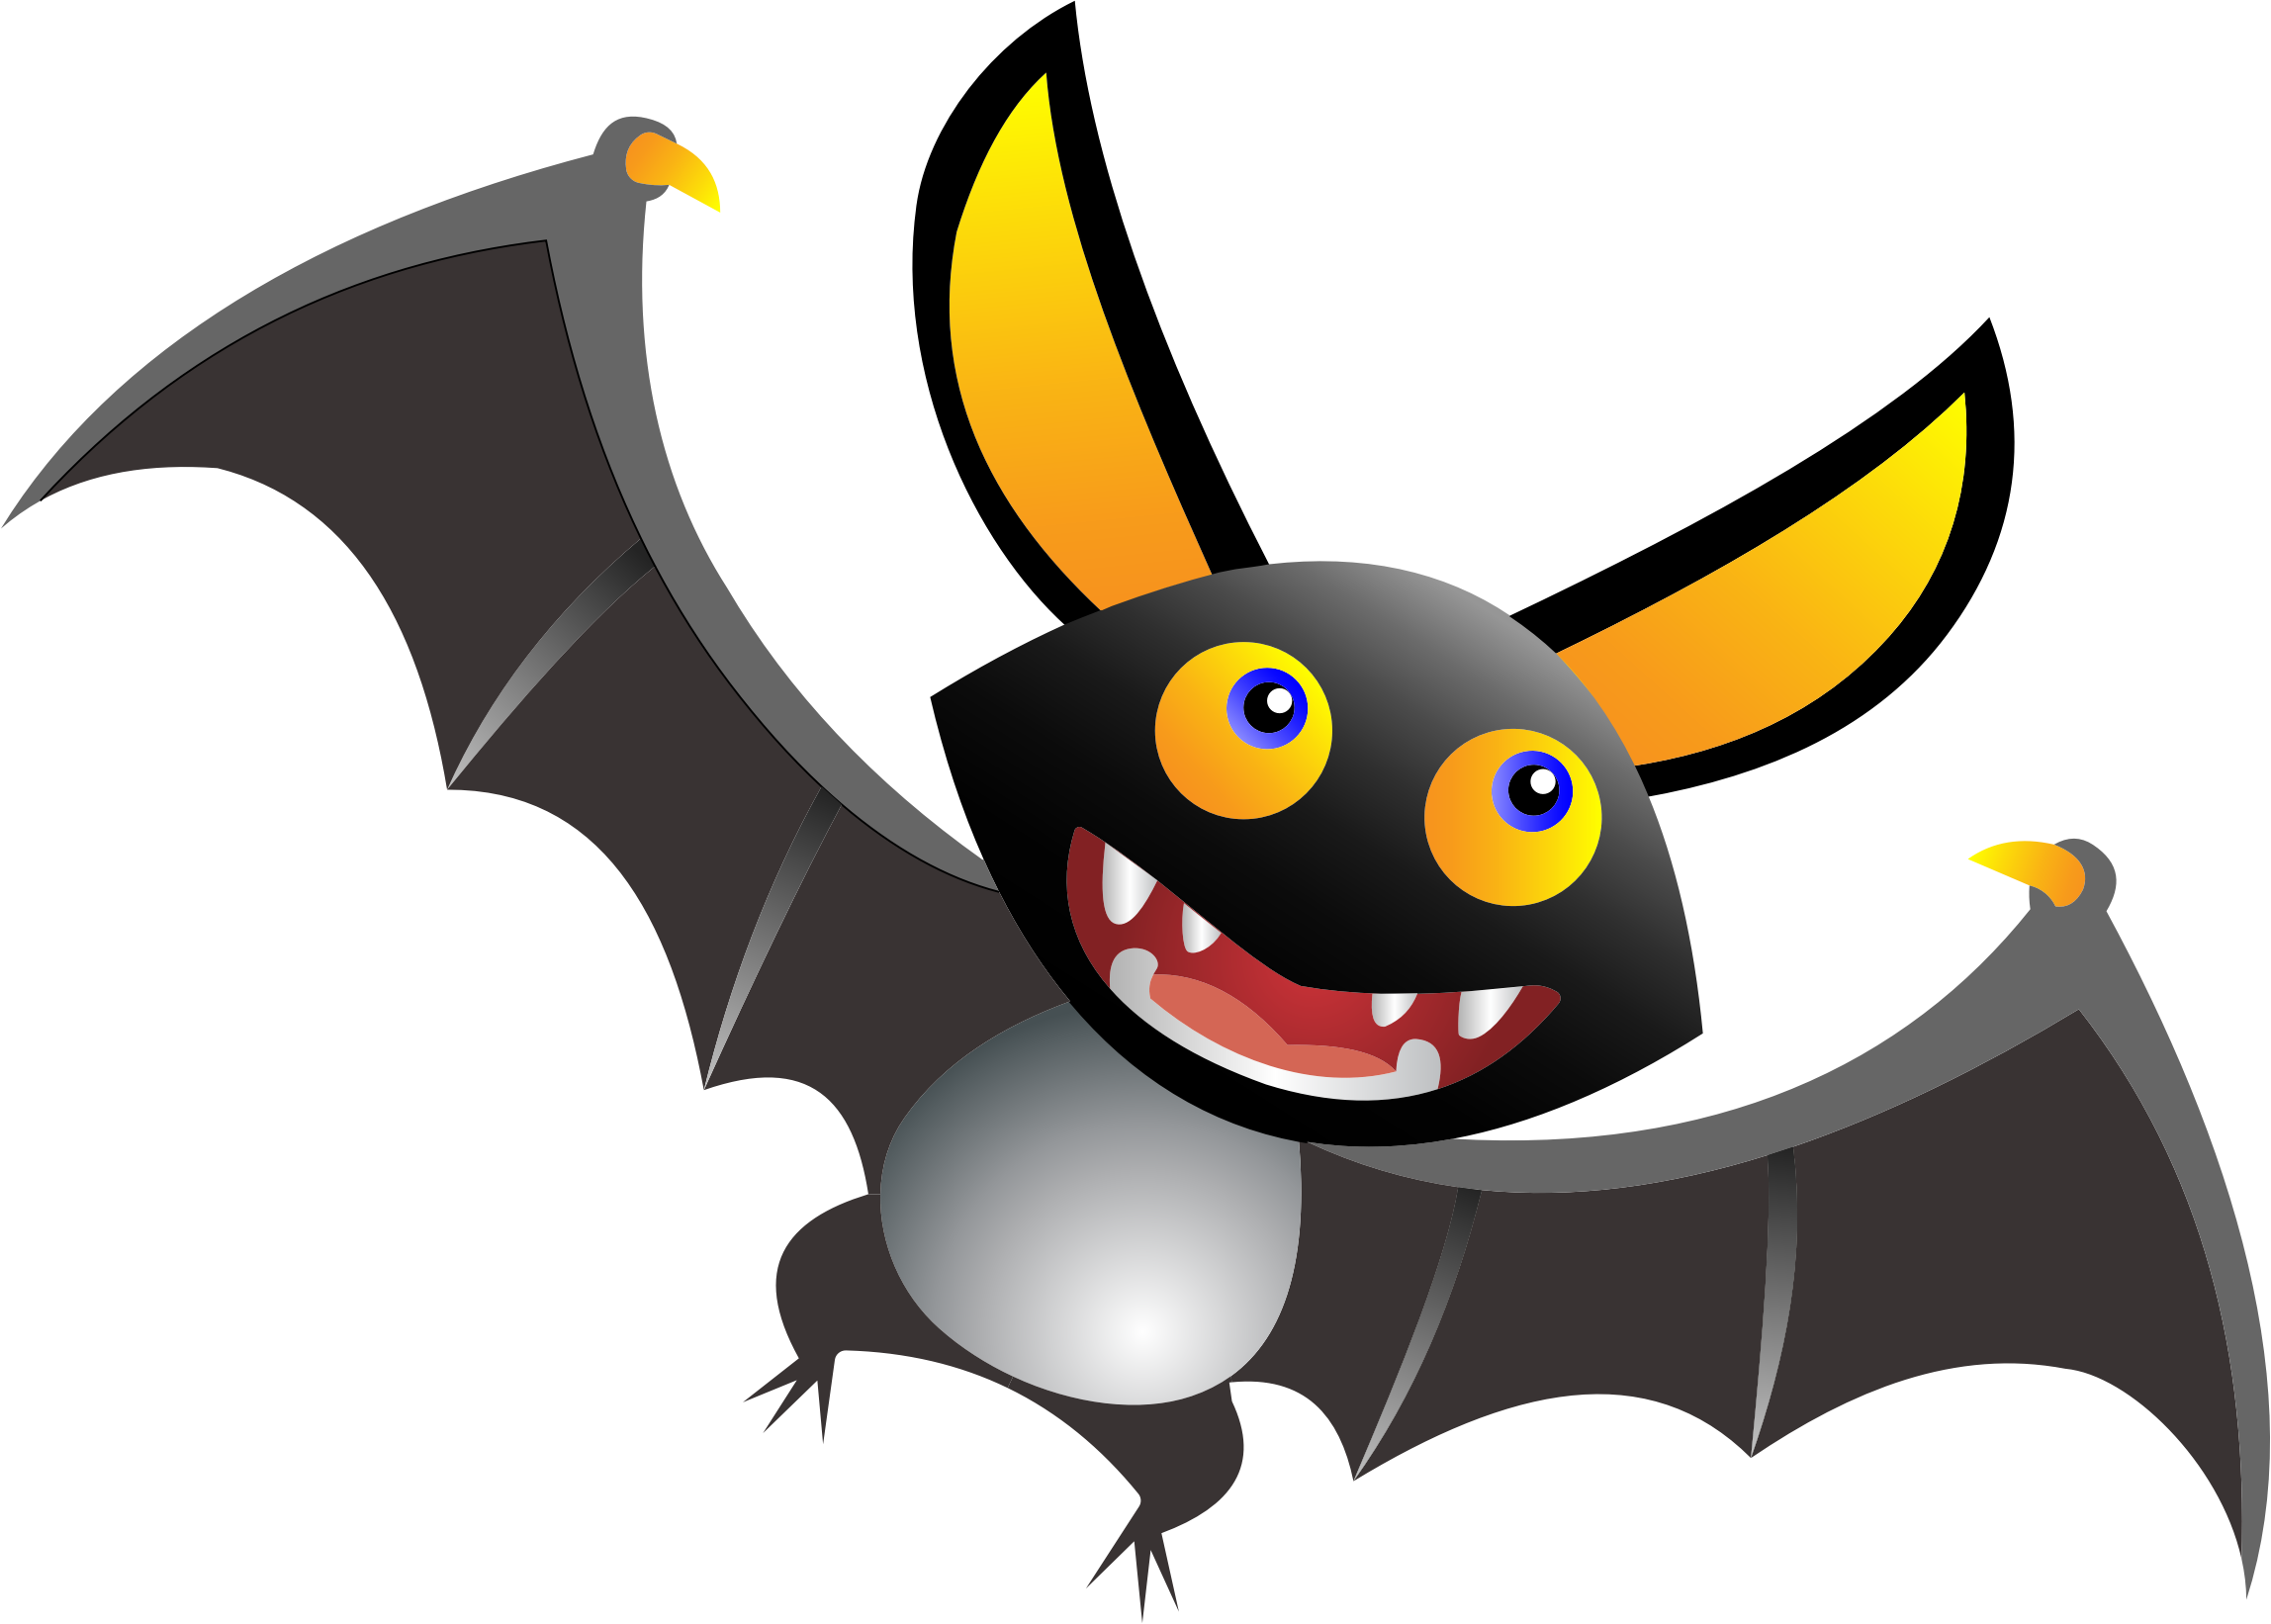 Vampire clipart spooky bat. Cute cartoon big image